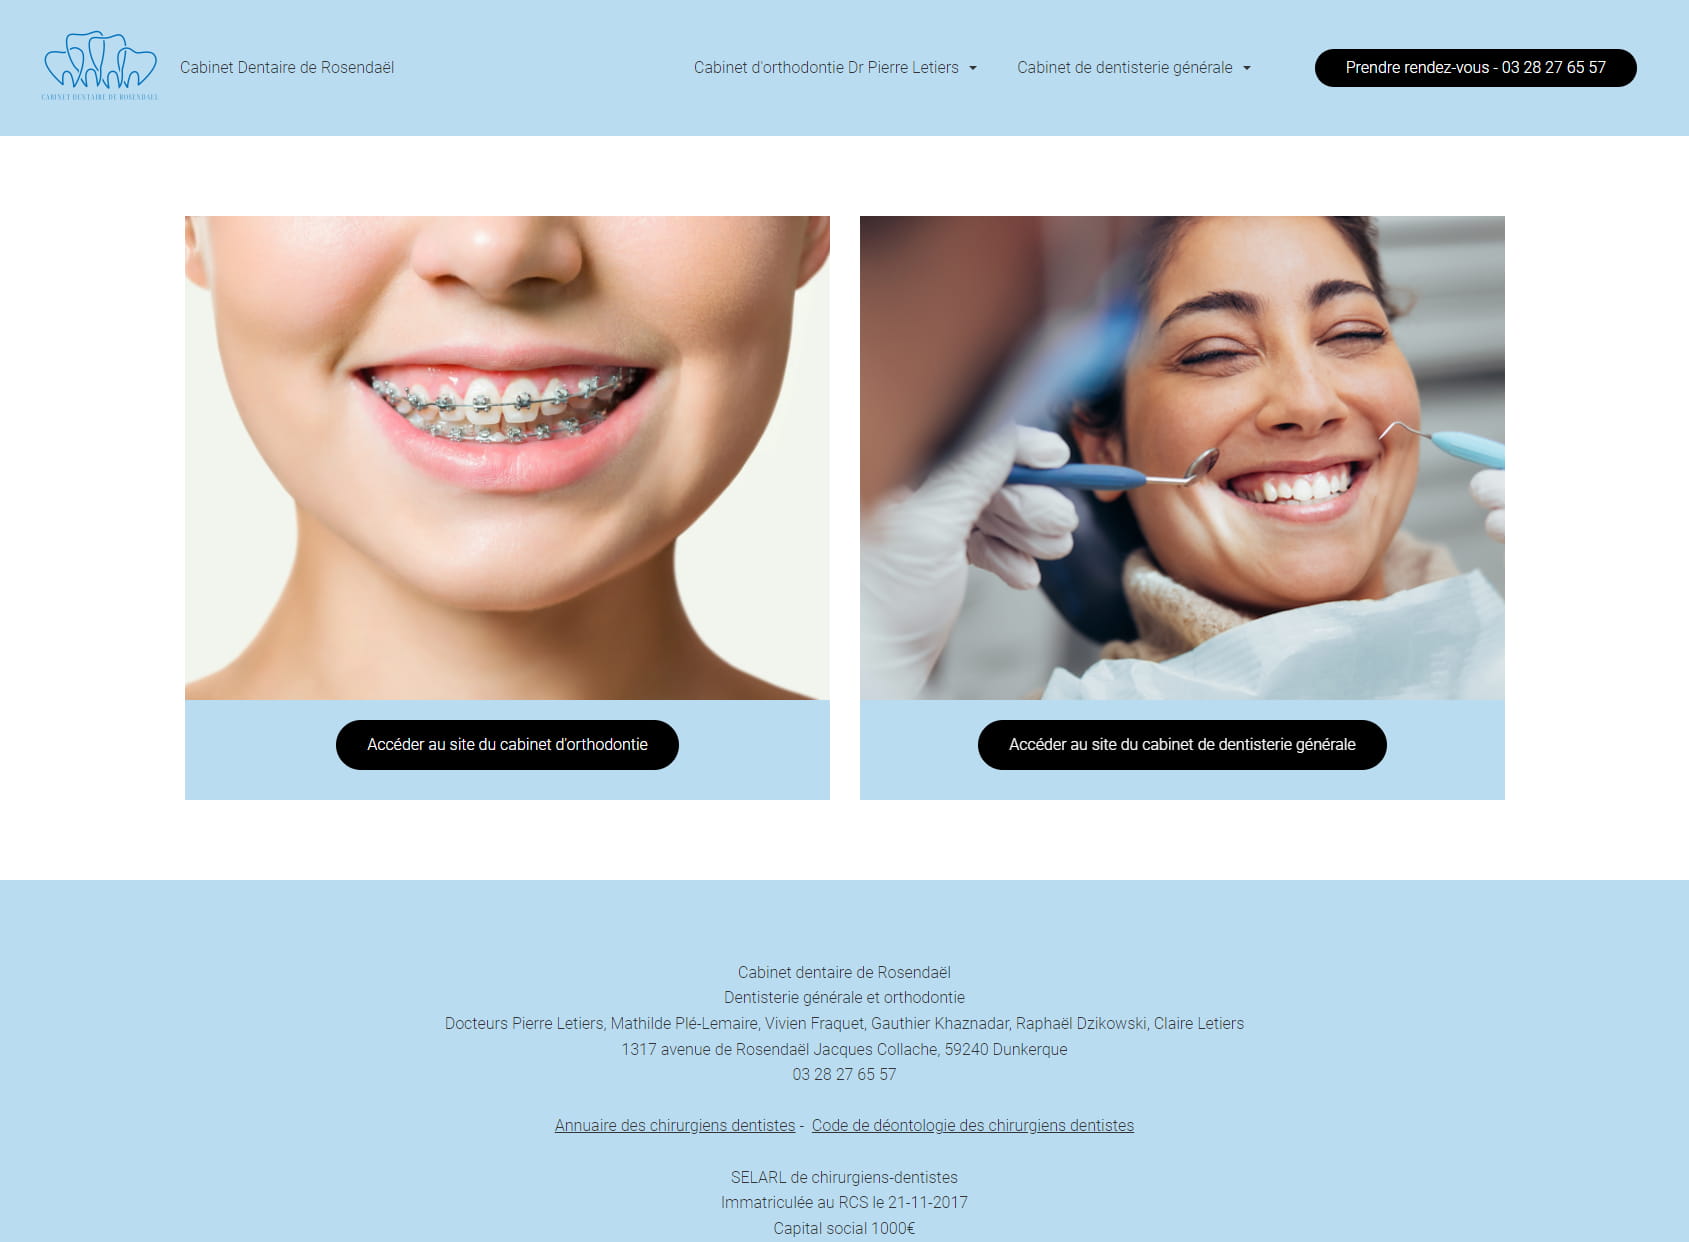 Orthodontie et Dentisterie générale - Cabinet dentaire de Rosendael